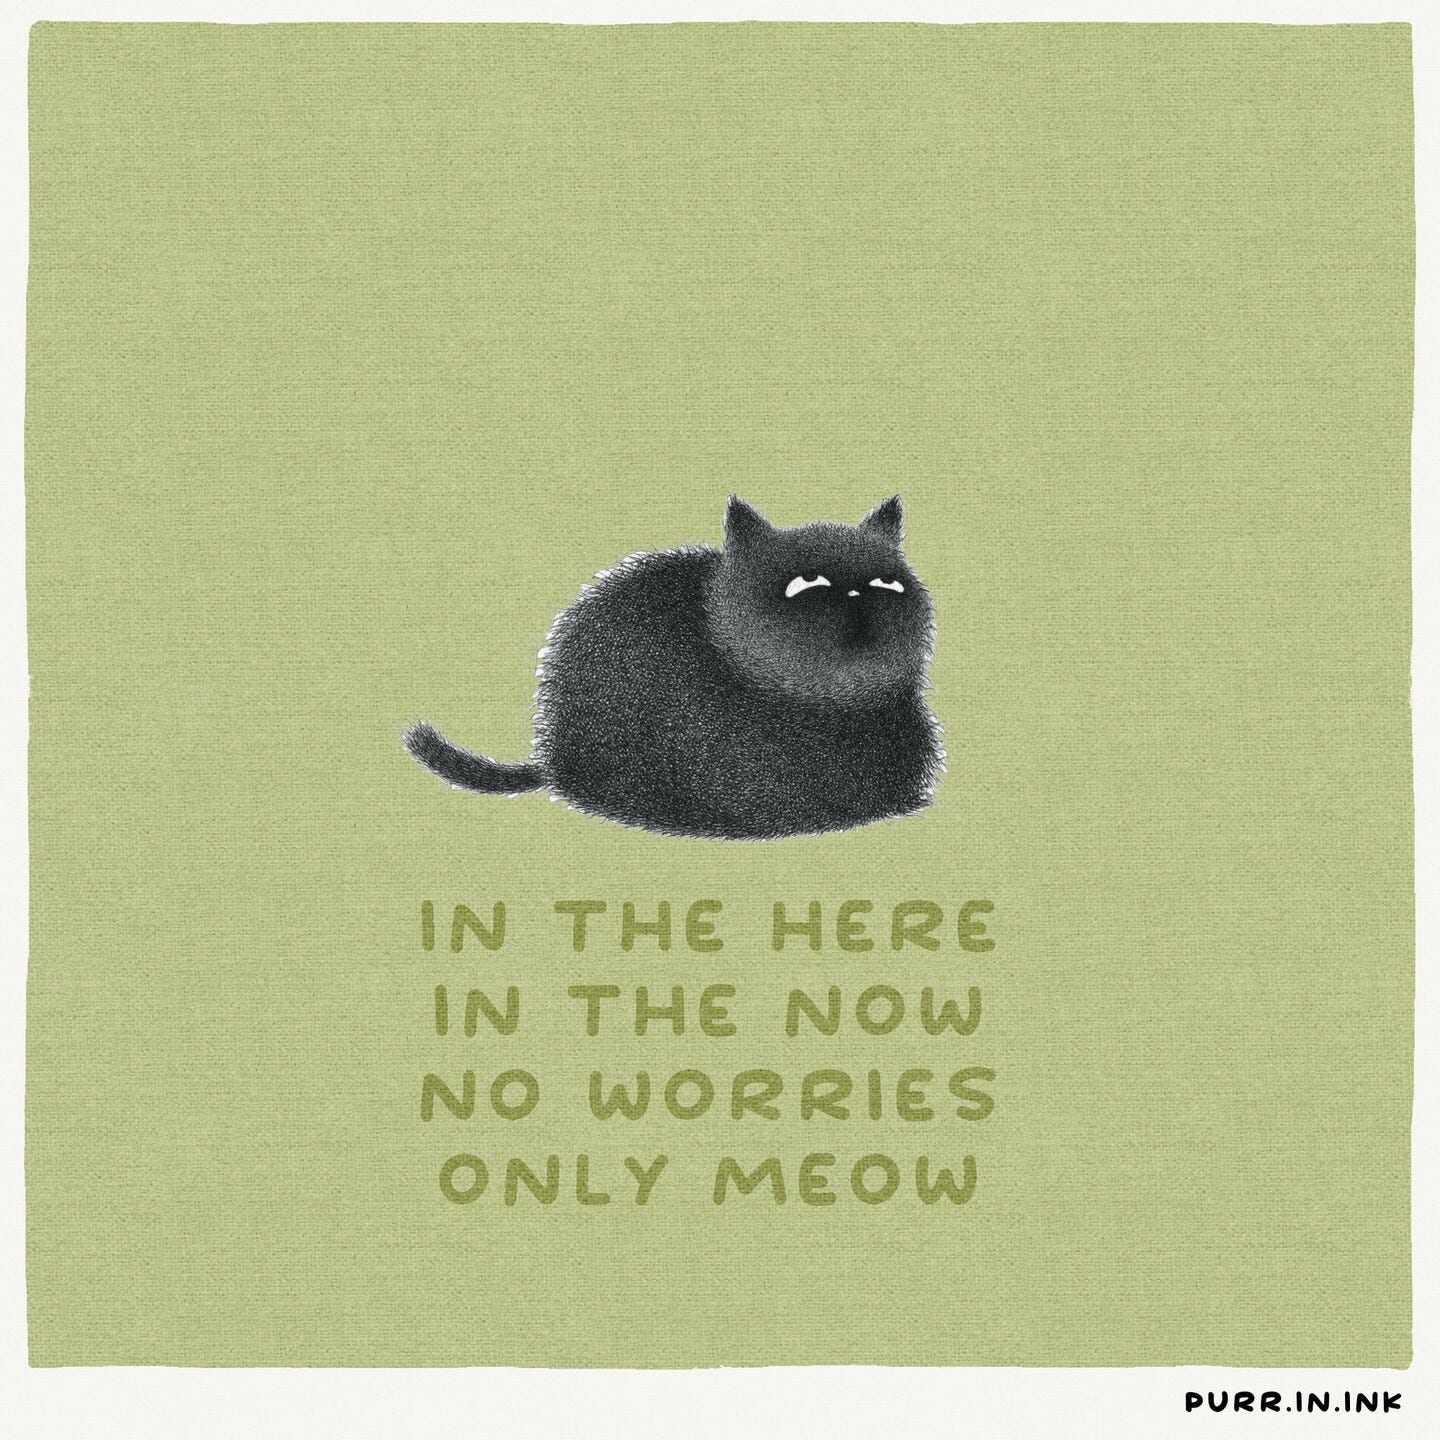 Zeichnung einer schwarzen Katze vor grünem Hintergrund.
Darunter die Worte:
"IN THE HERE
IN THE NOW
NO WORRIES
ONLY MEOW"